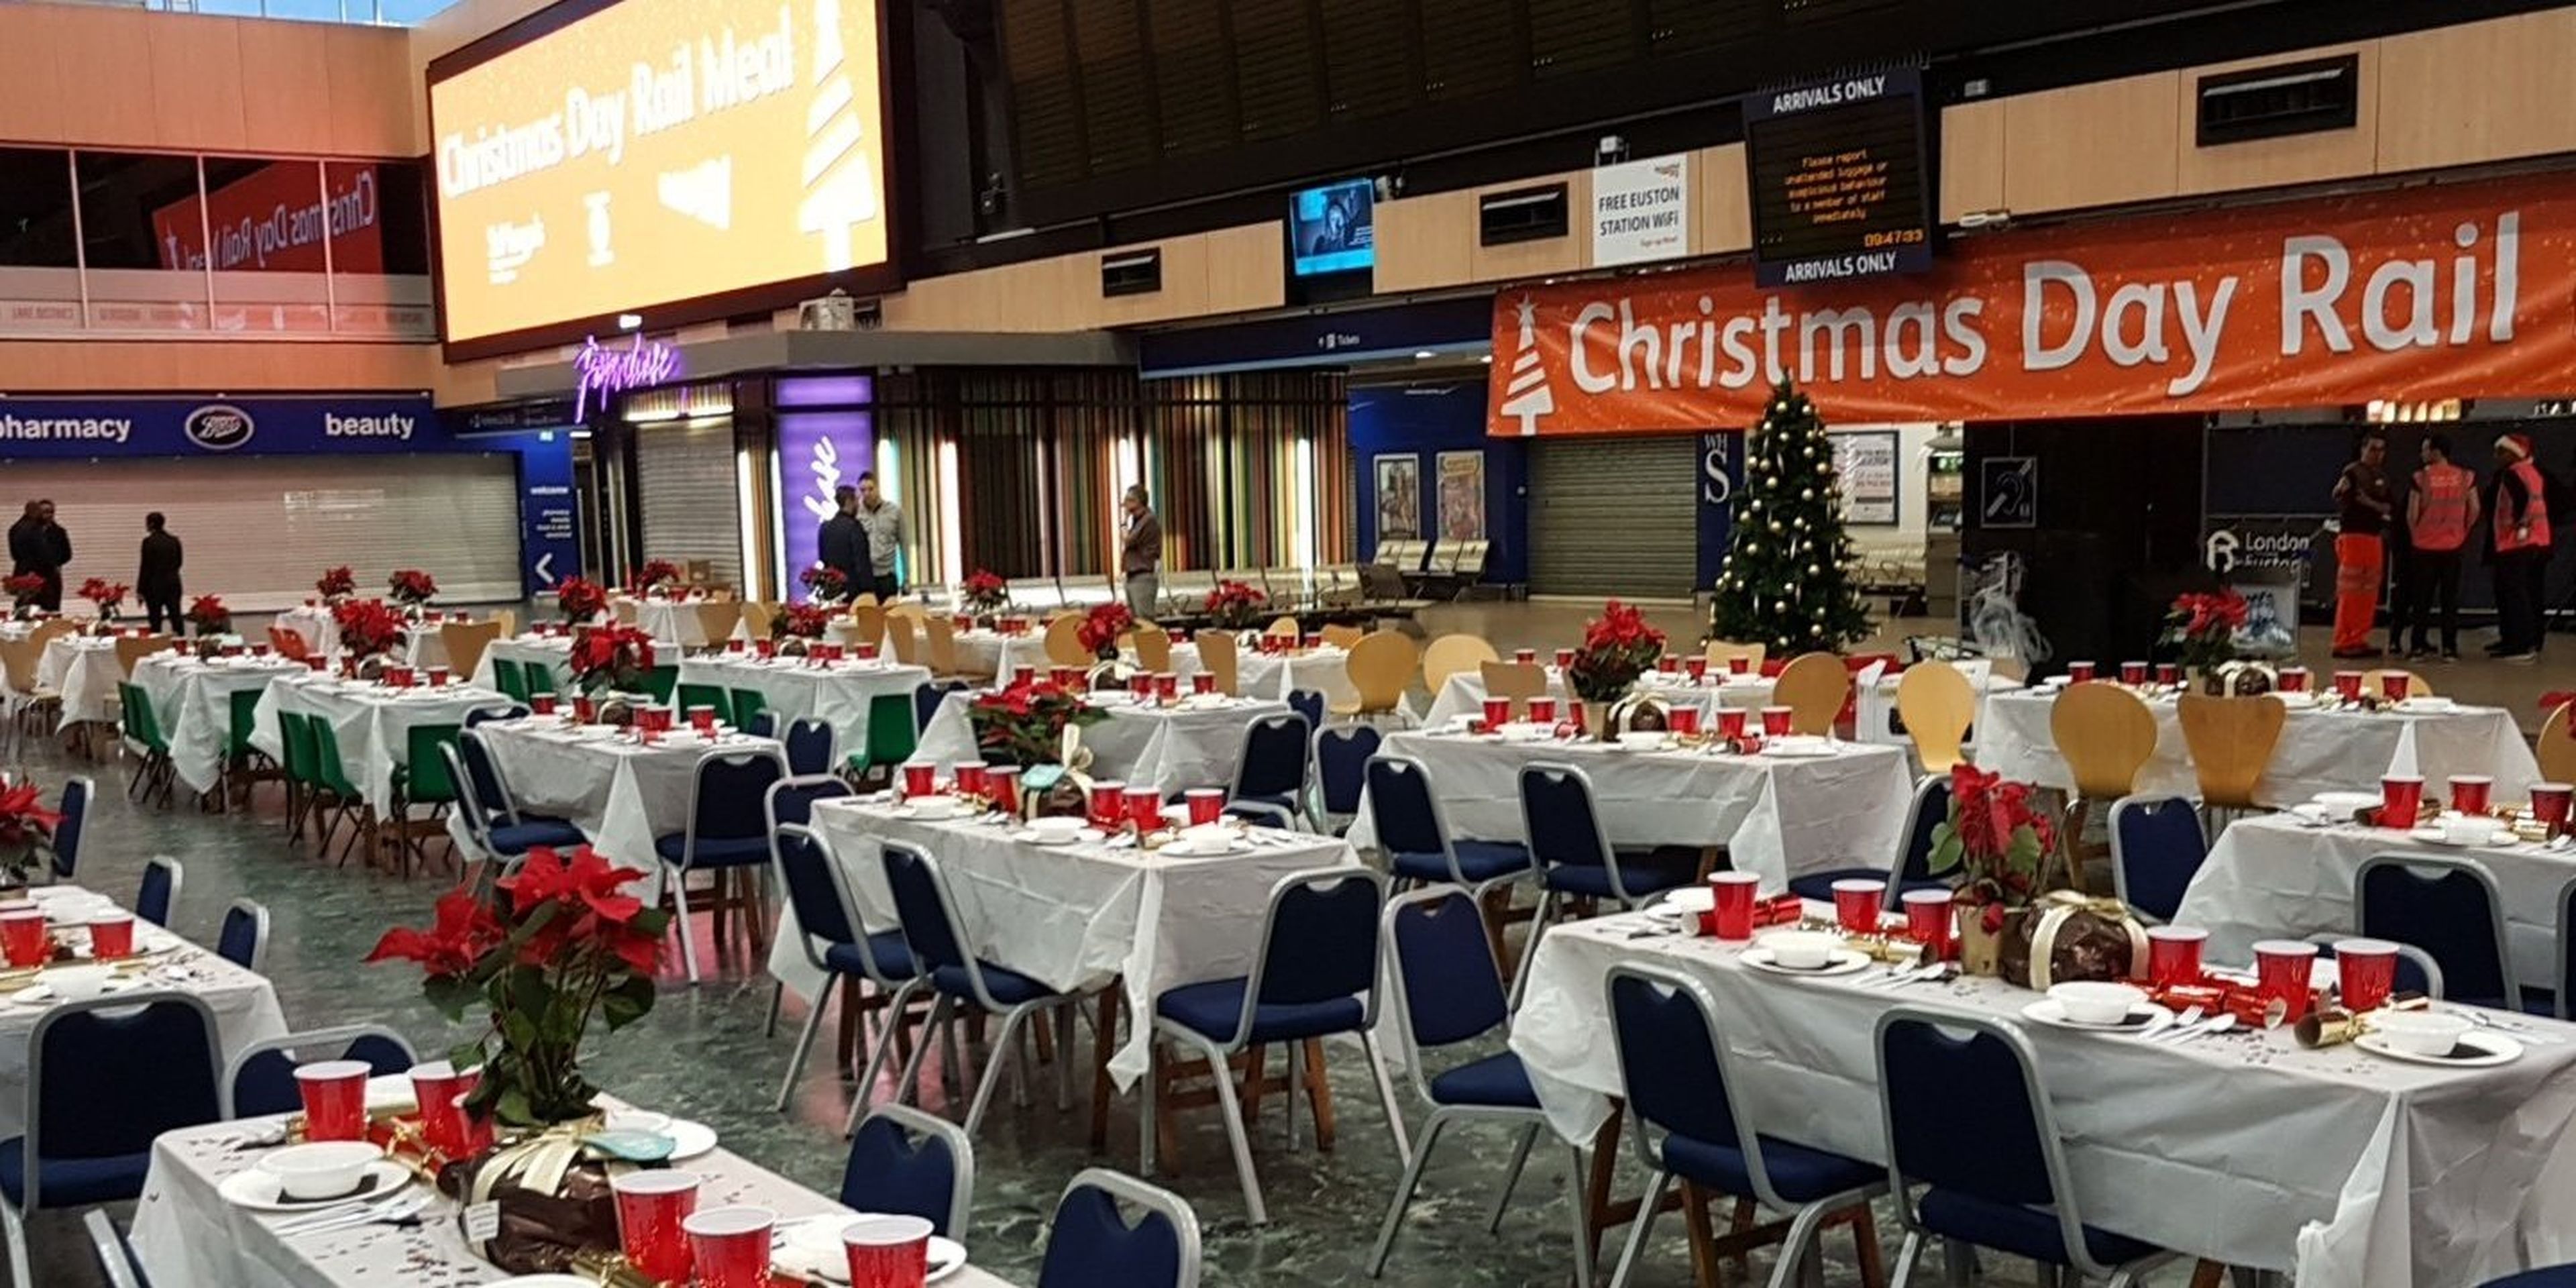 La estación de trenes de Euston, en Londres, convertida en albergue para indigentes en Navidad.